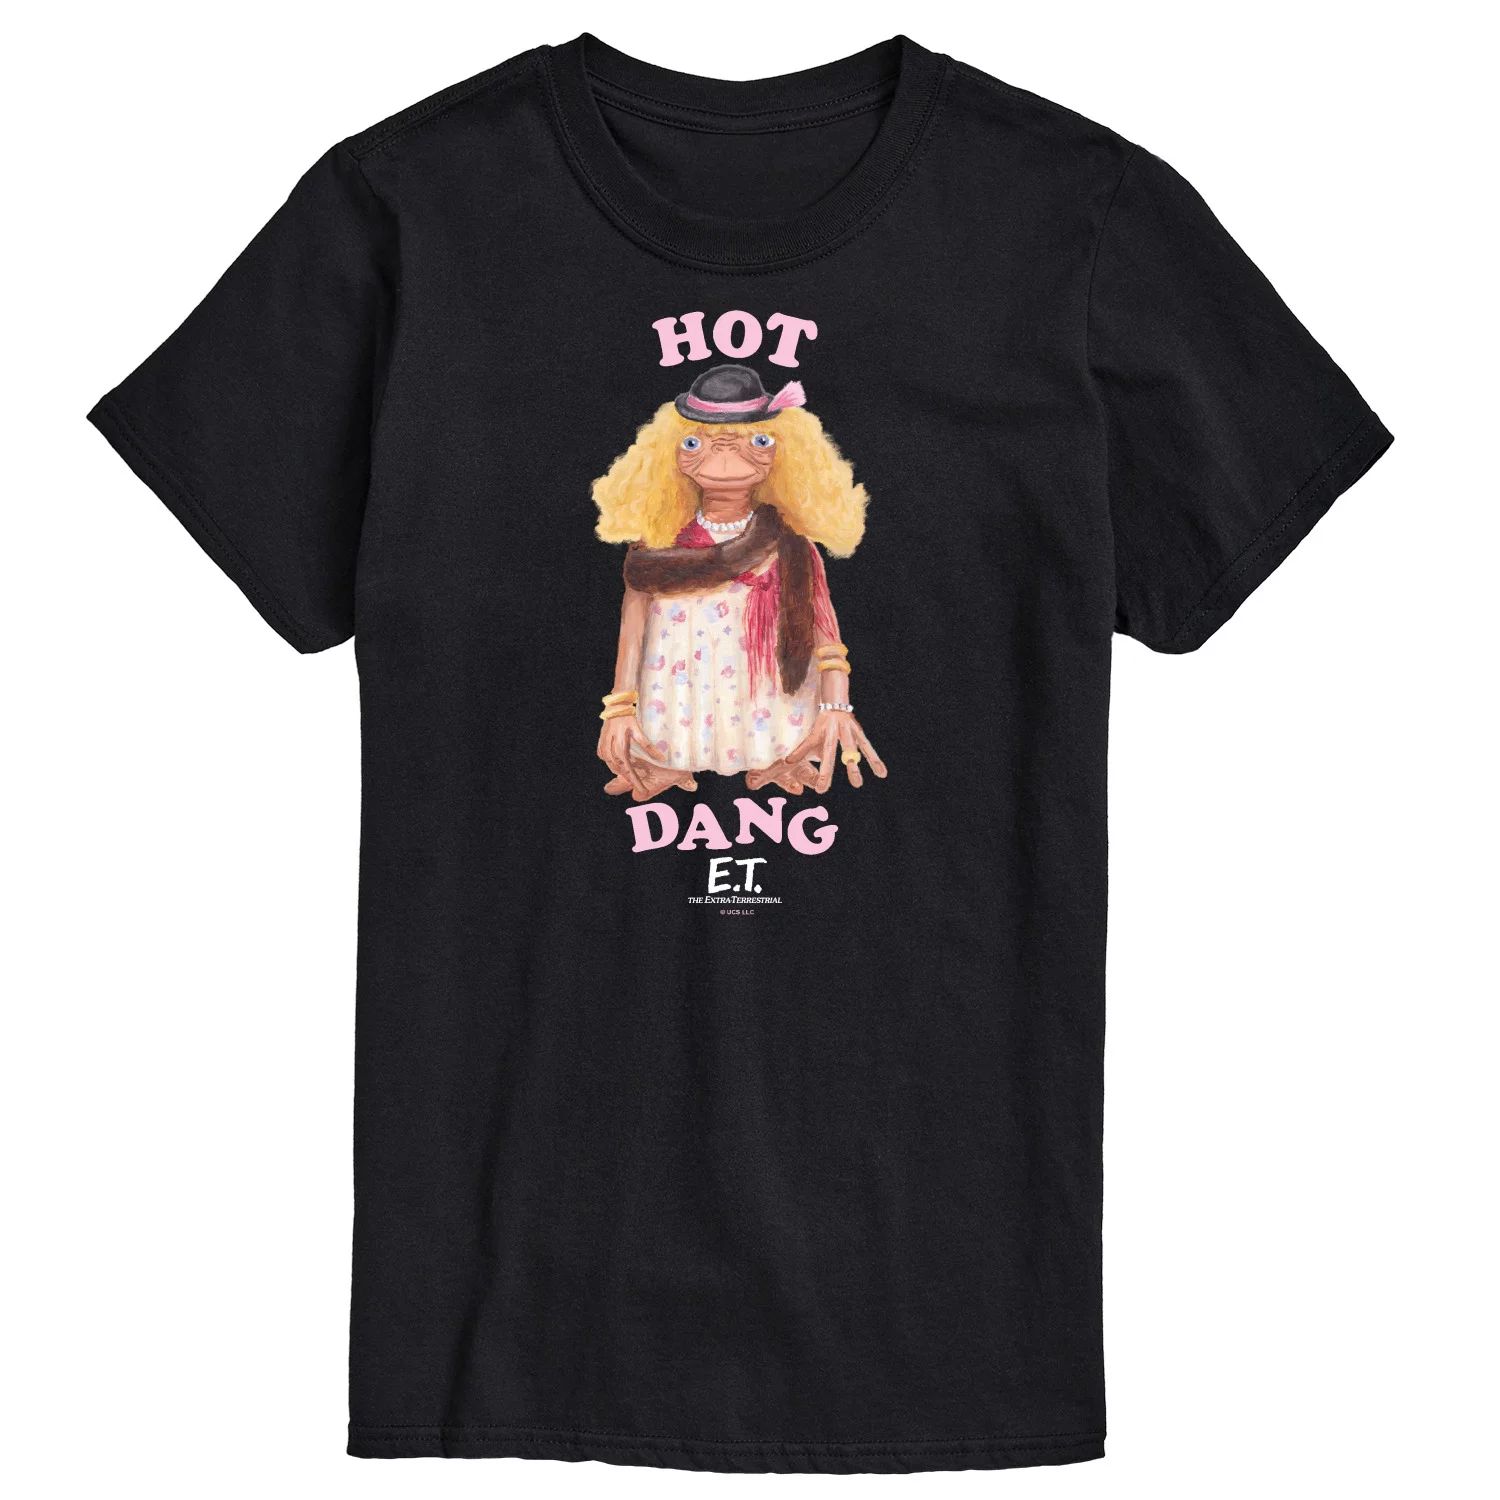 Мужская футболка ET Hot Dang Licensed Character цена и фото